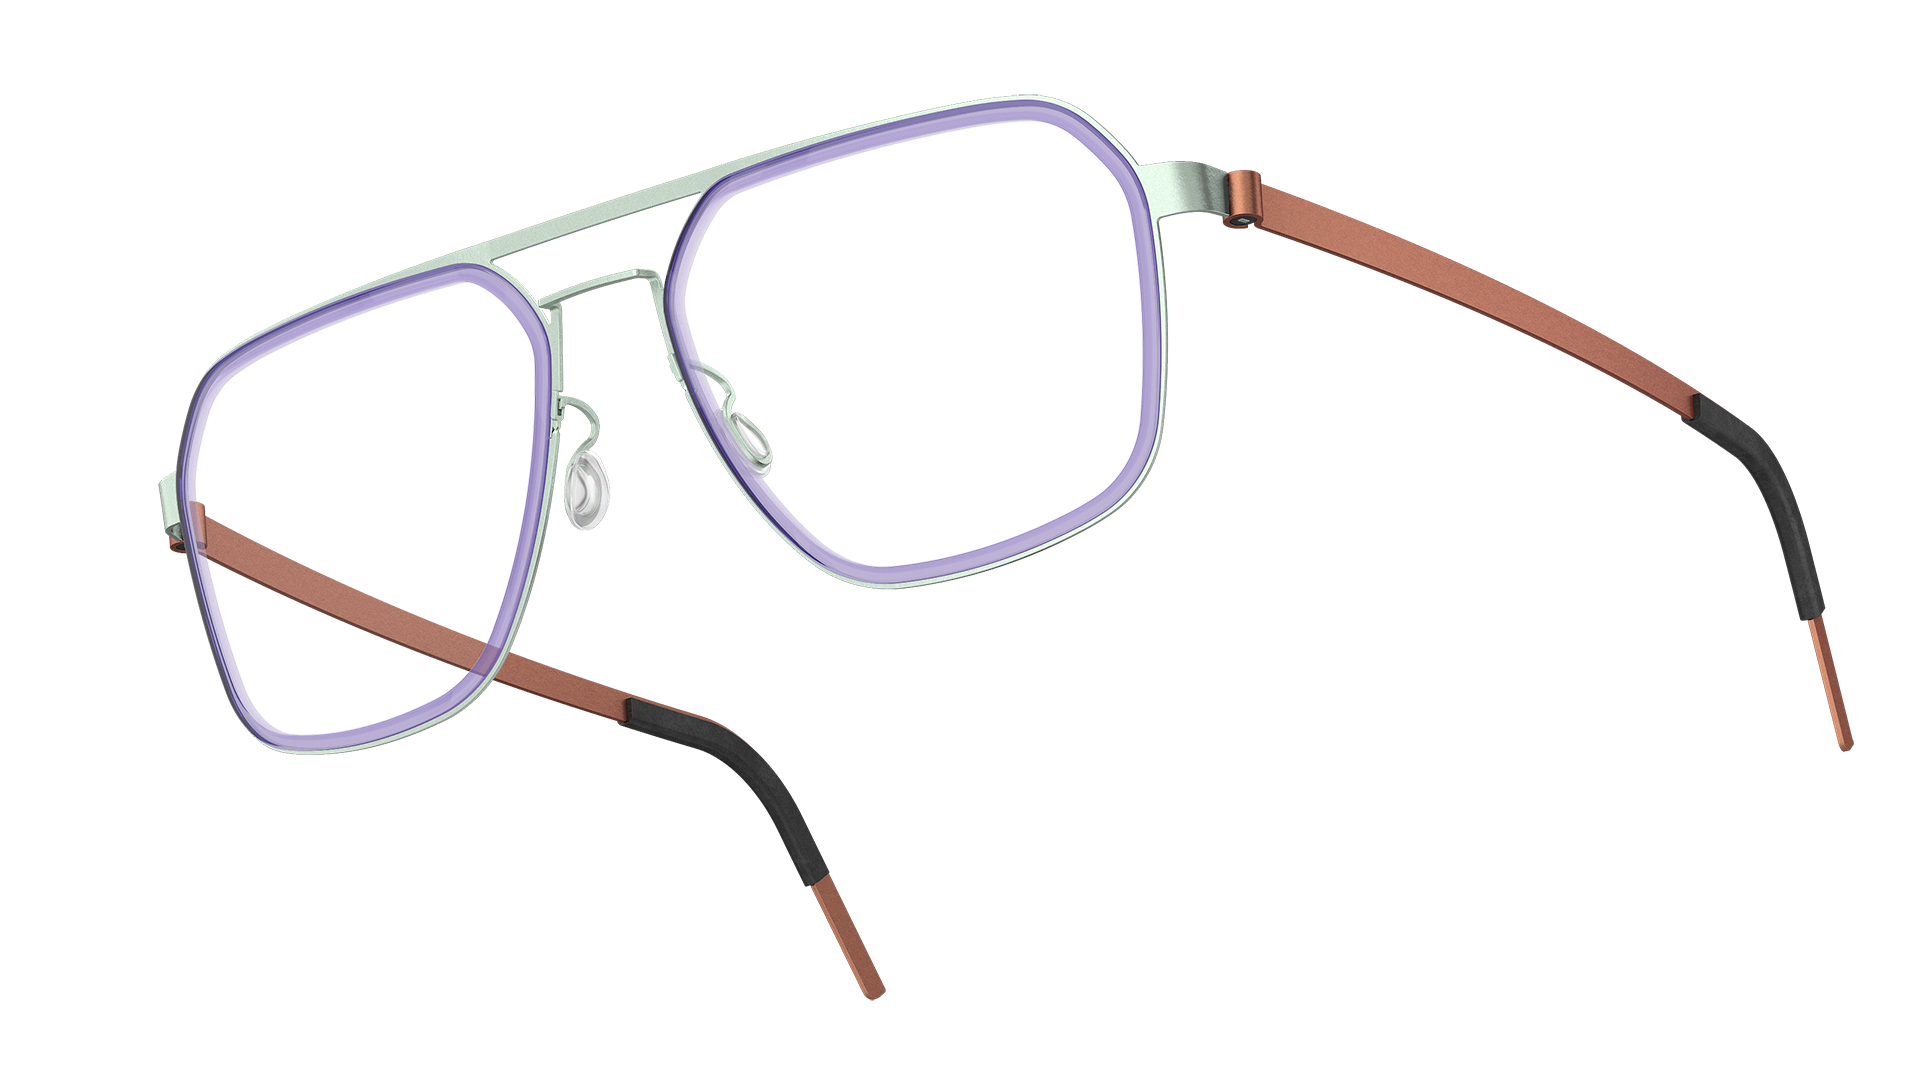 LINDBERG strip 型号9753 双良方形镜架，蓝色前框和棕色钛金属镜腿